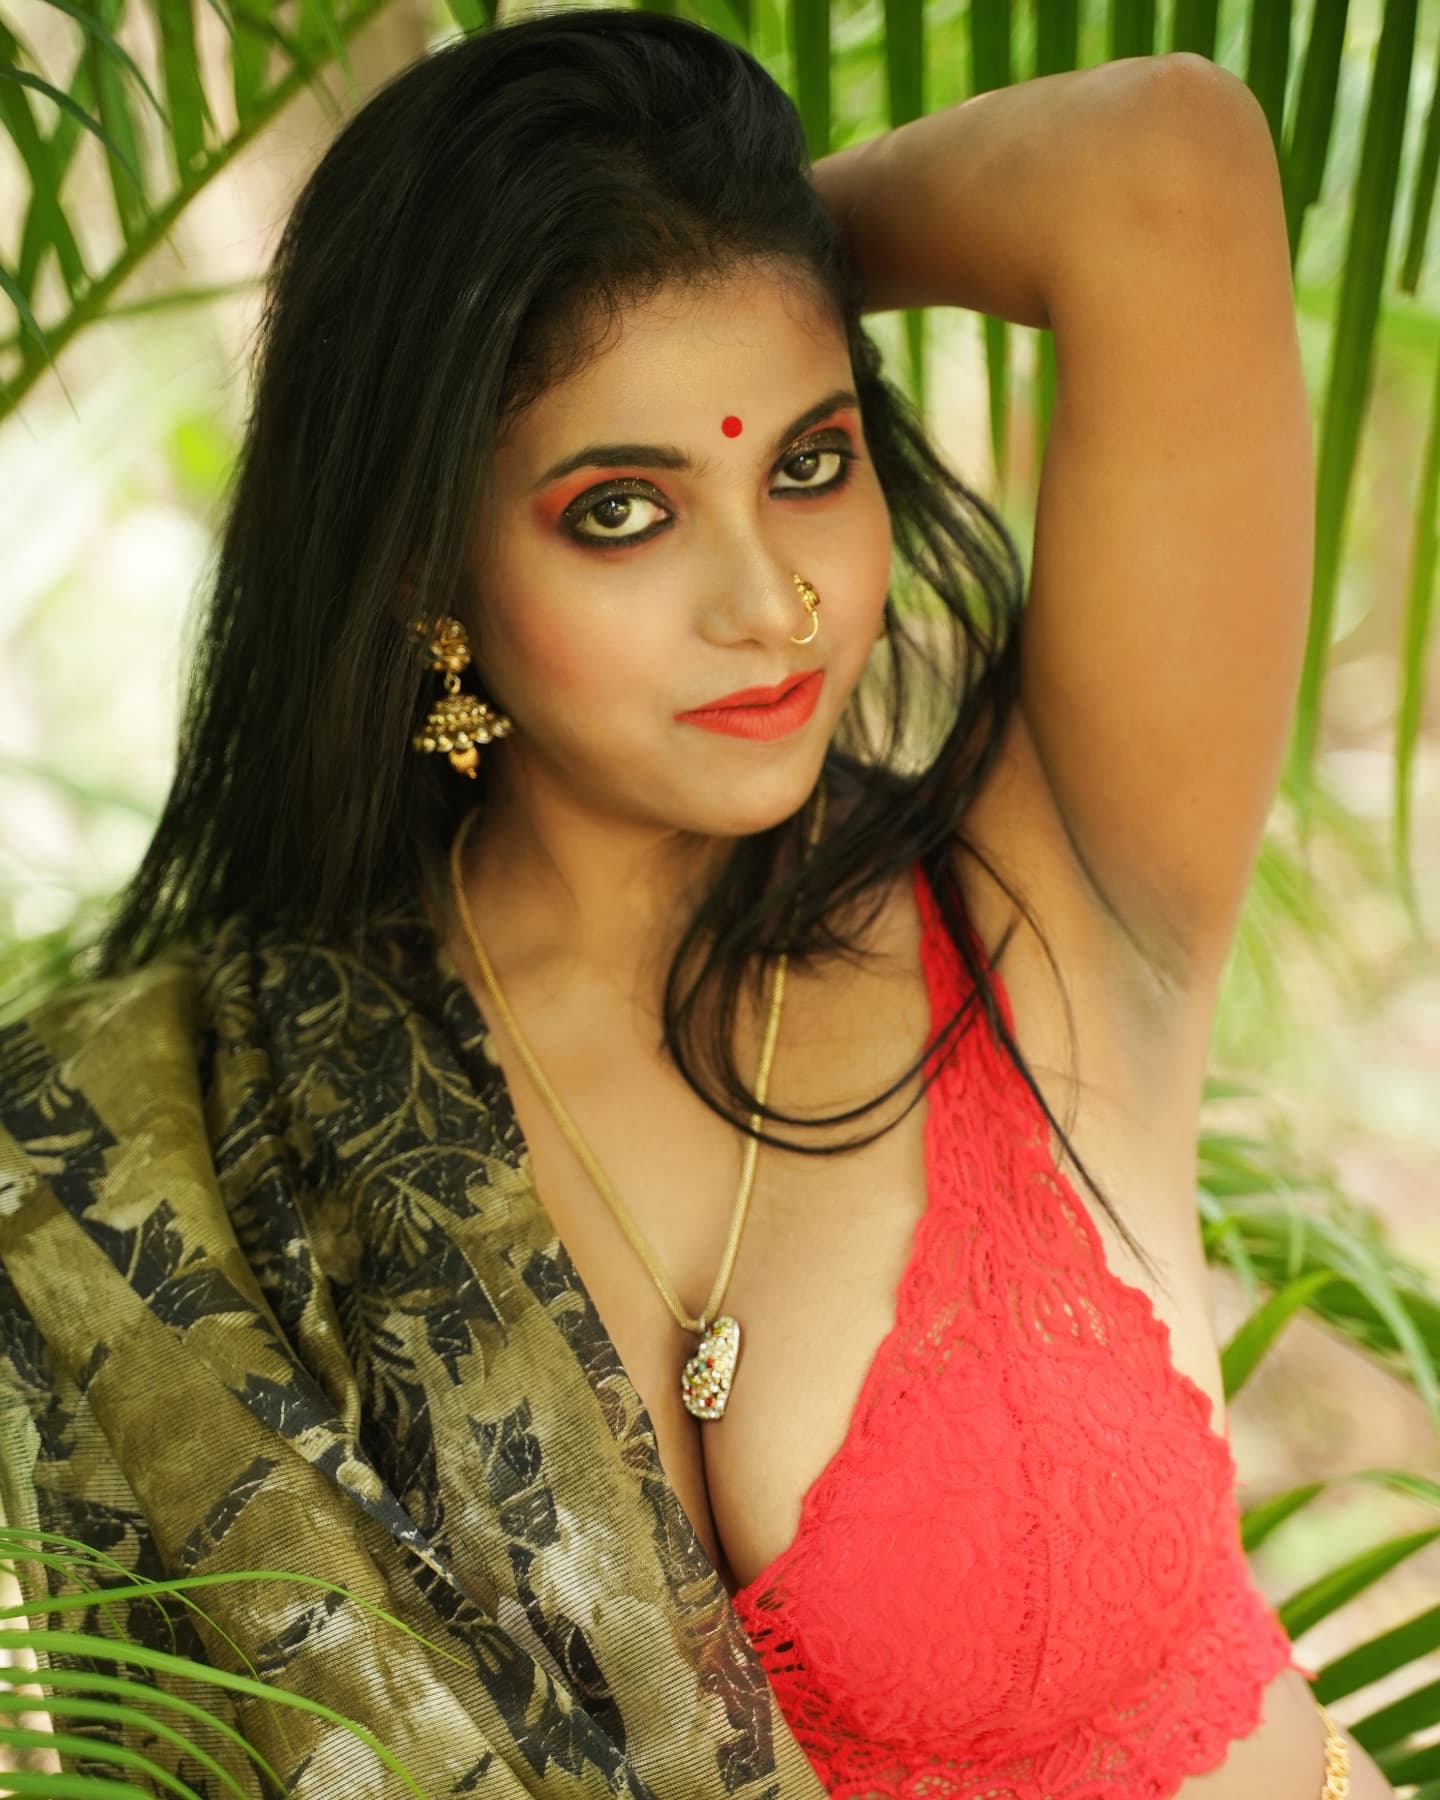 Sexy-Bhabhi-Roohi-Set-02-45c33537f225beedb.jpg